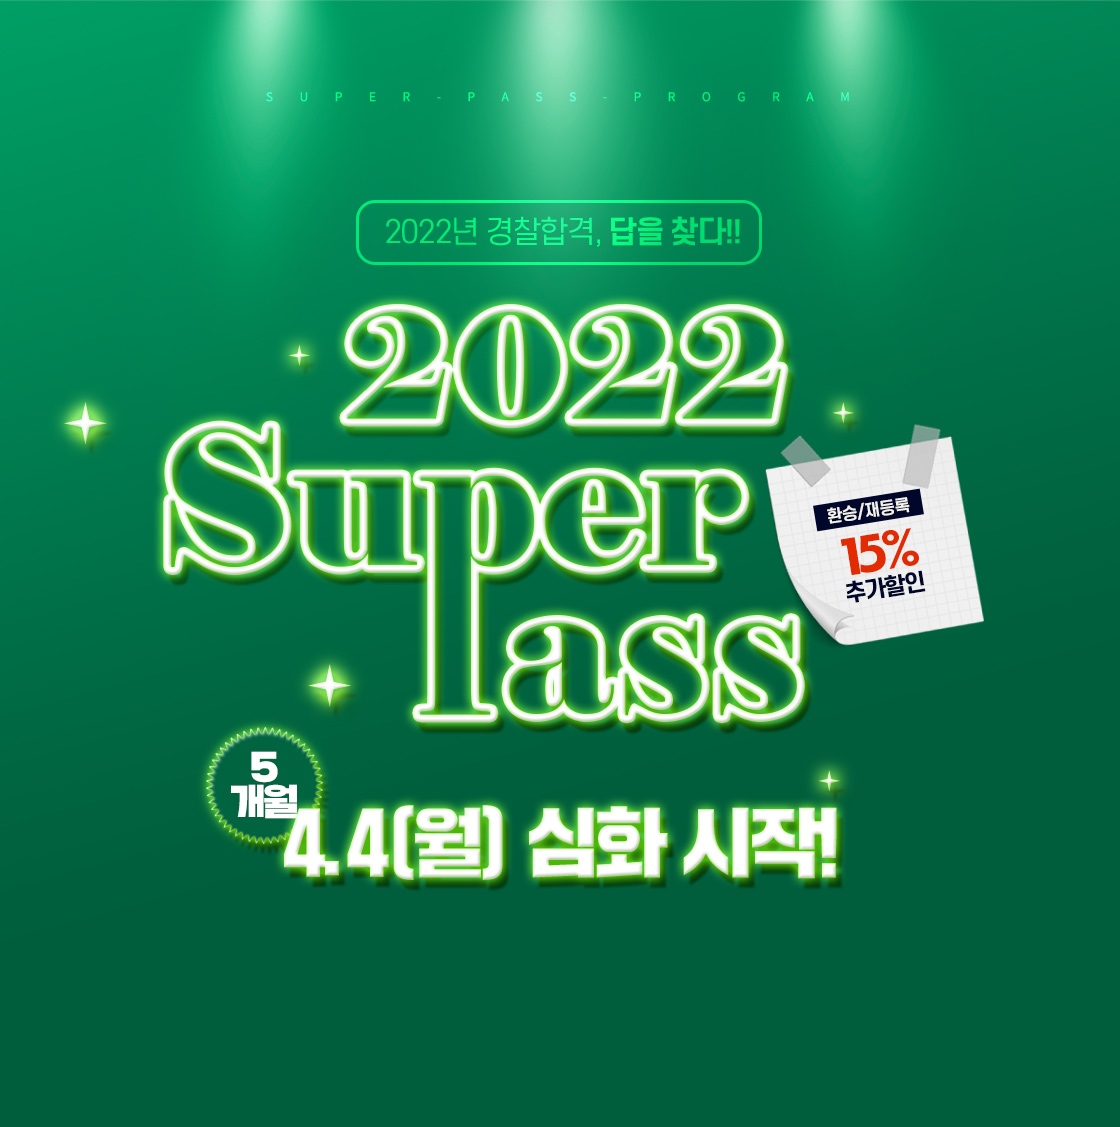 2022 슈퍼 pass